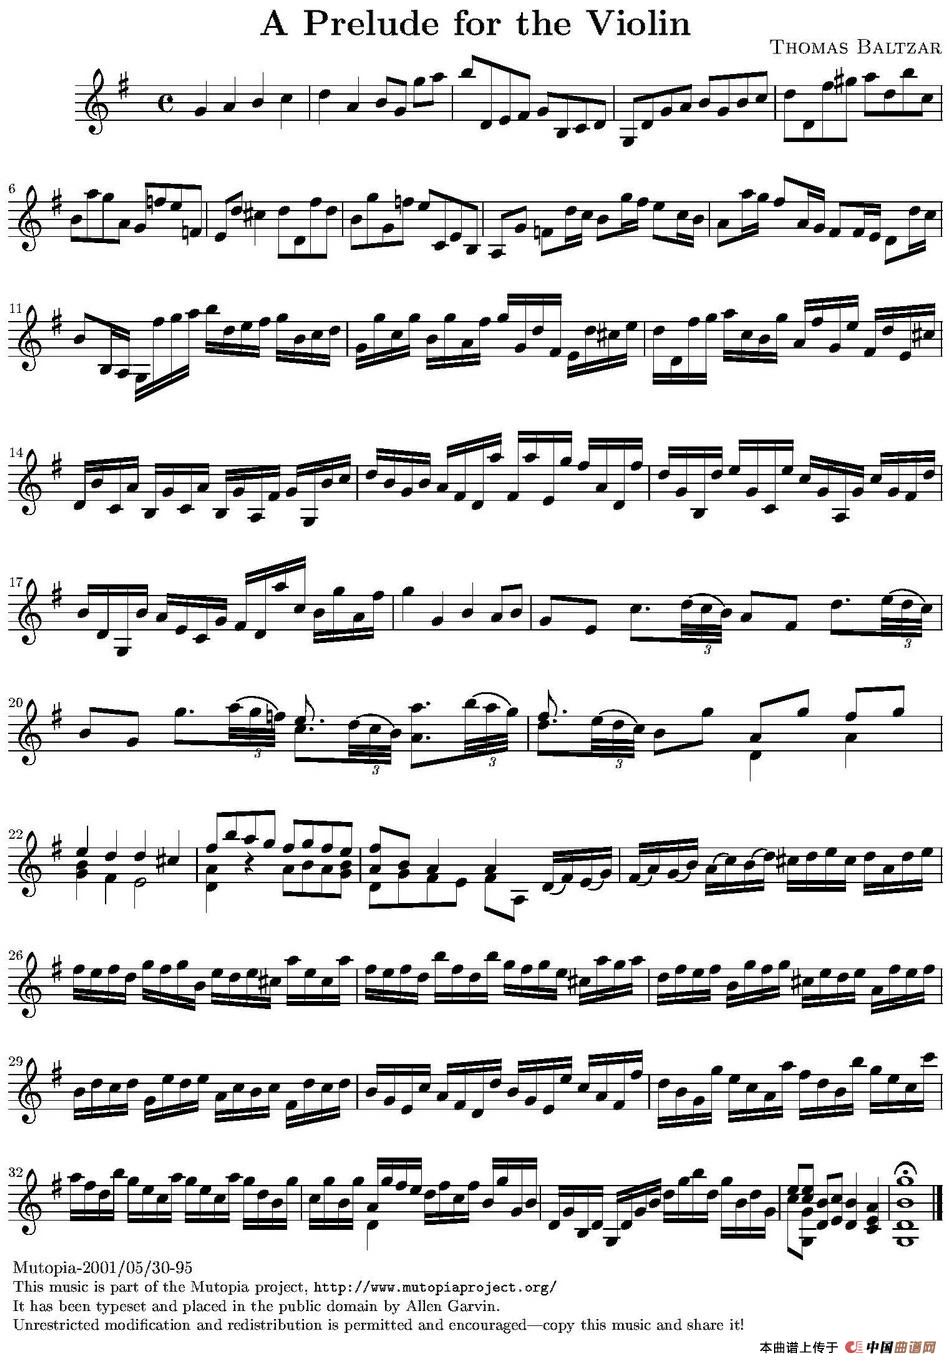 A Prelude for the Violin